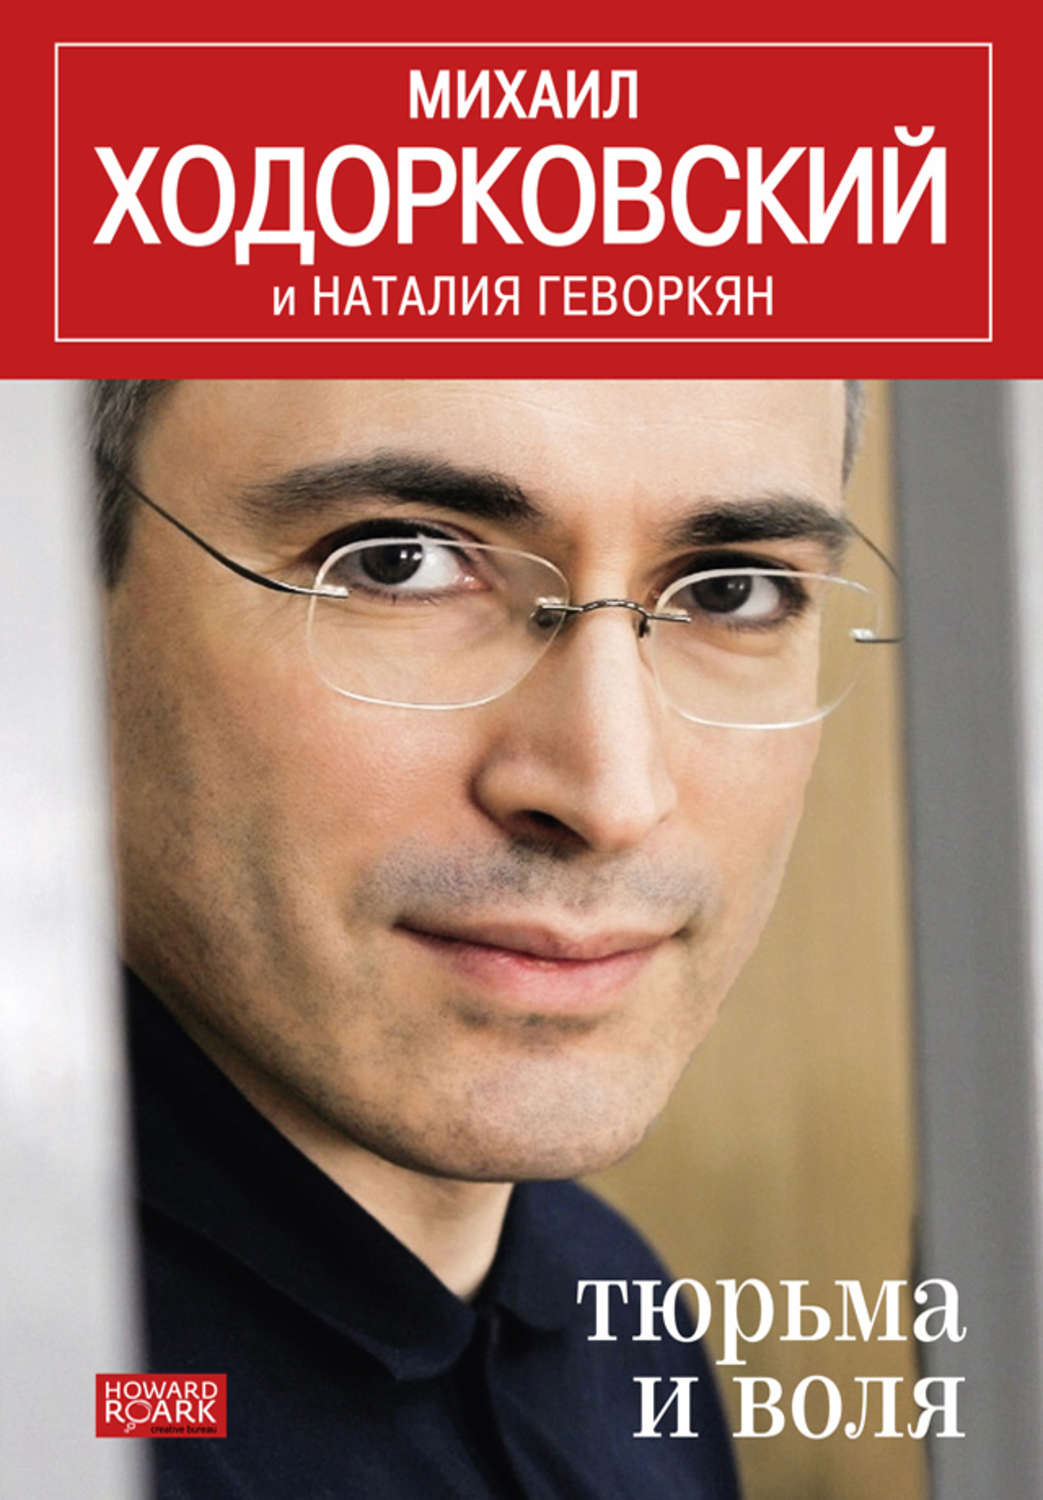 Скачать книгу ходорковского тюремные люди